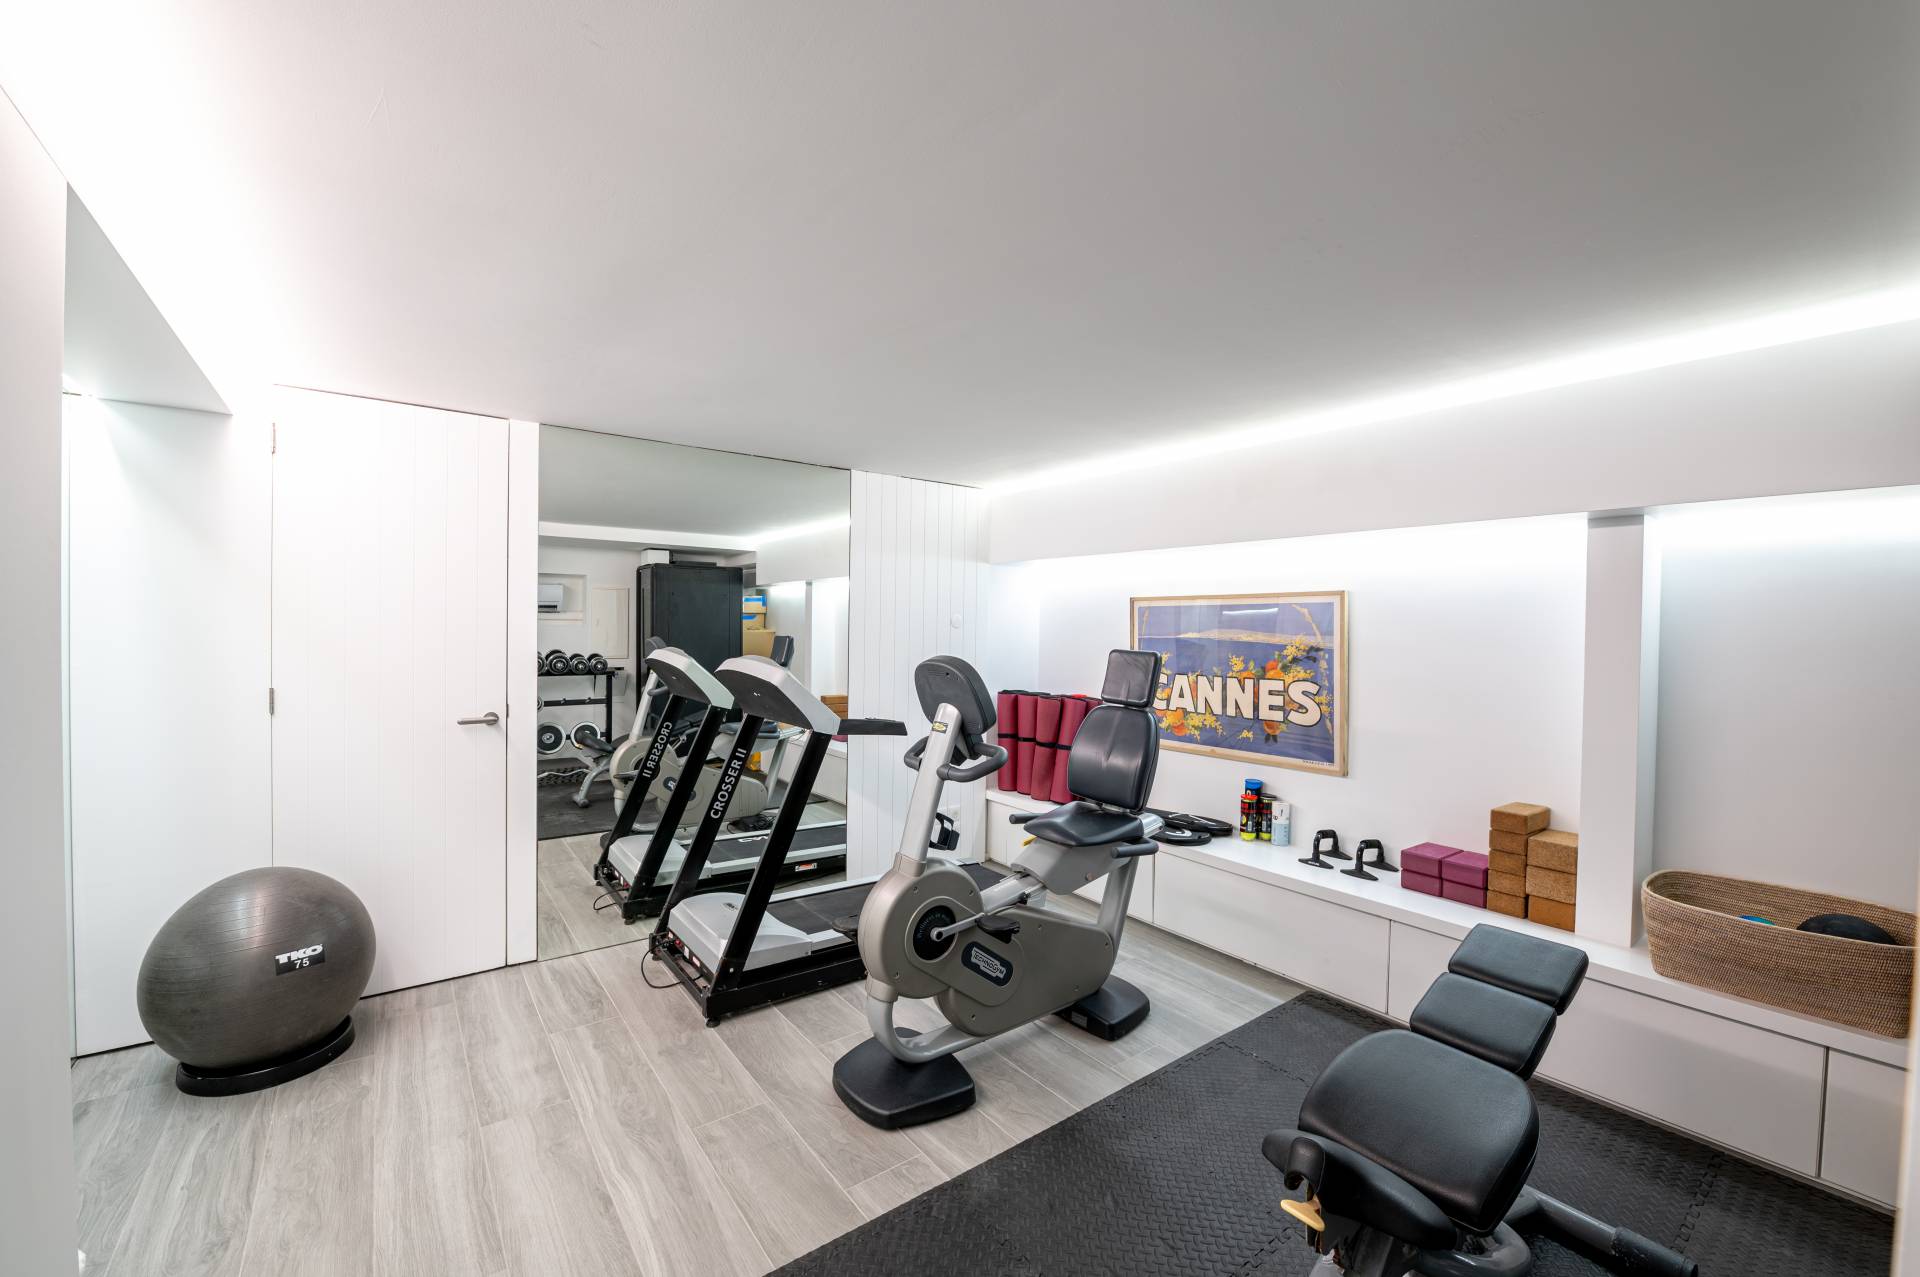 Villa Casa del Mar Fitness Room